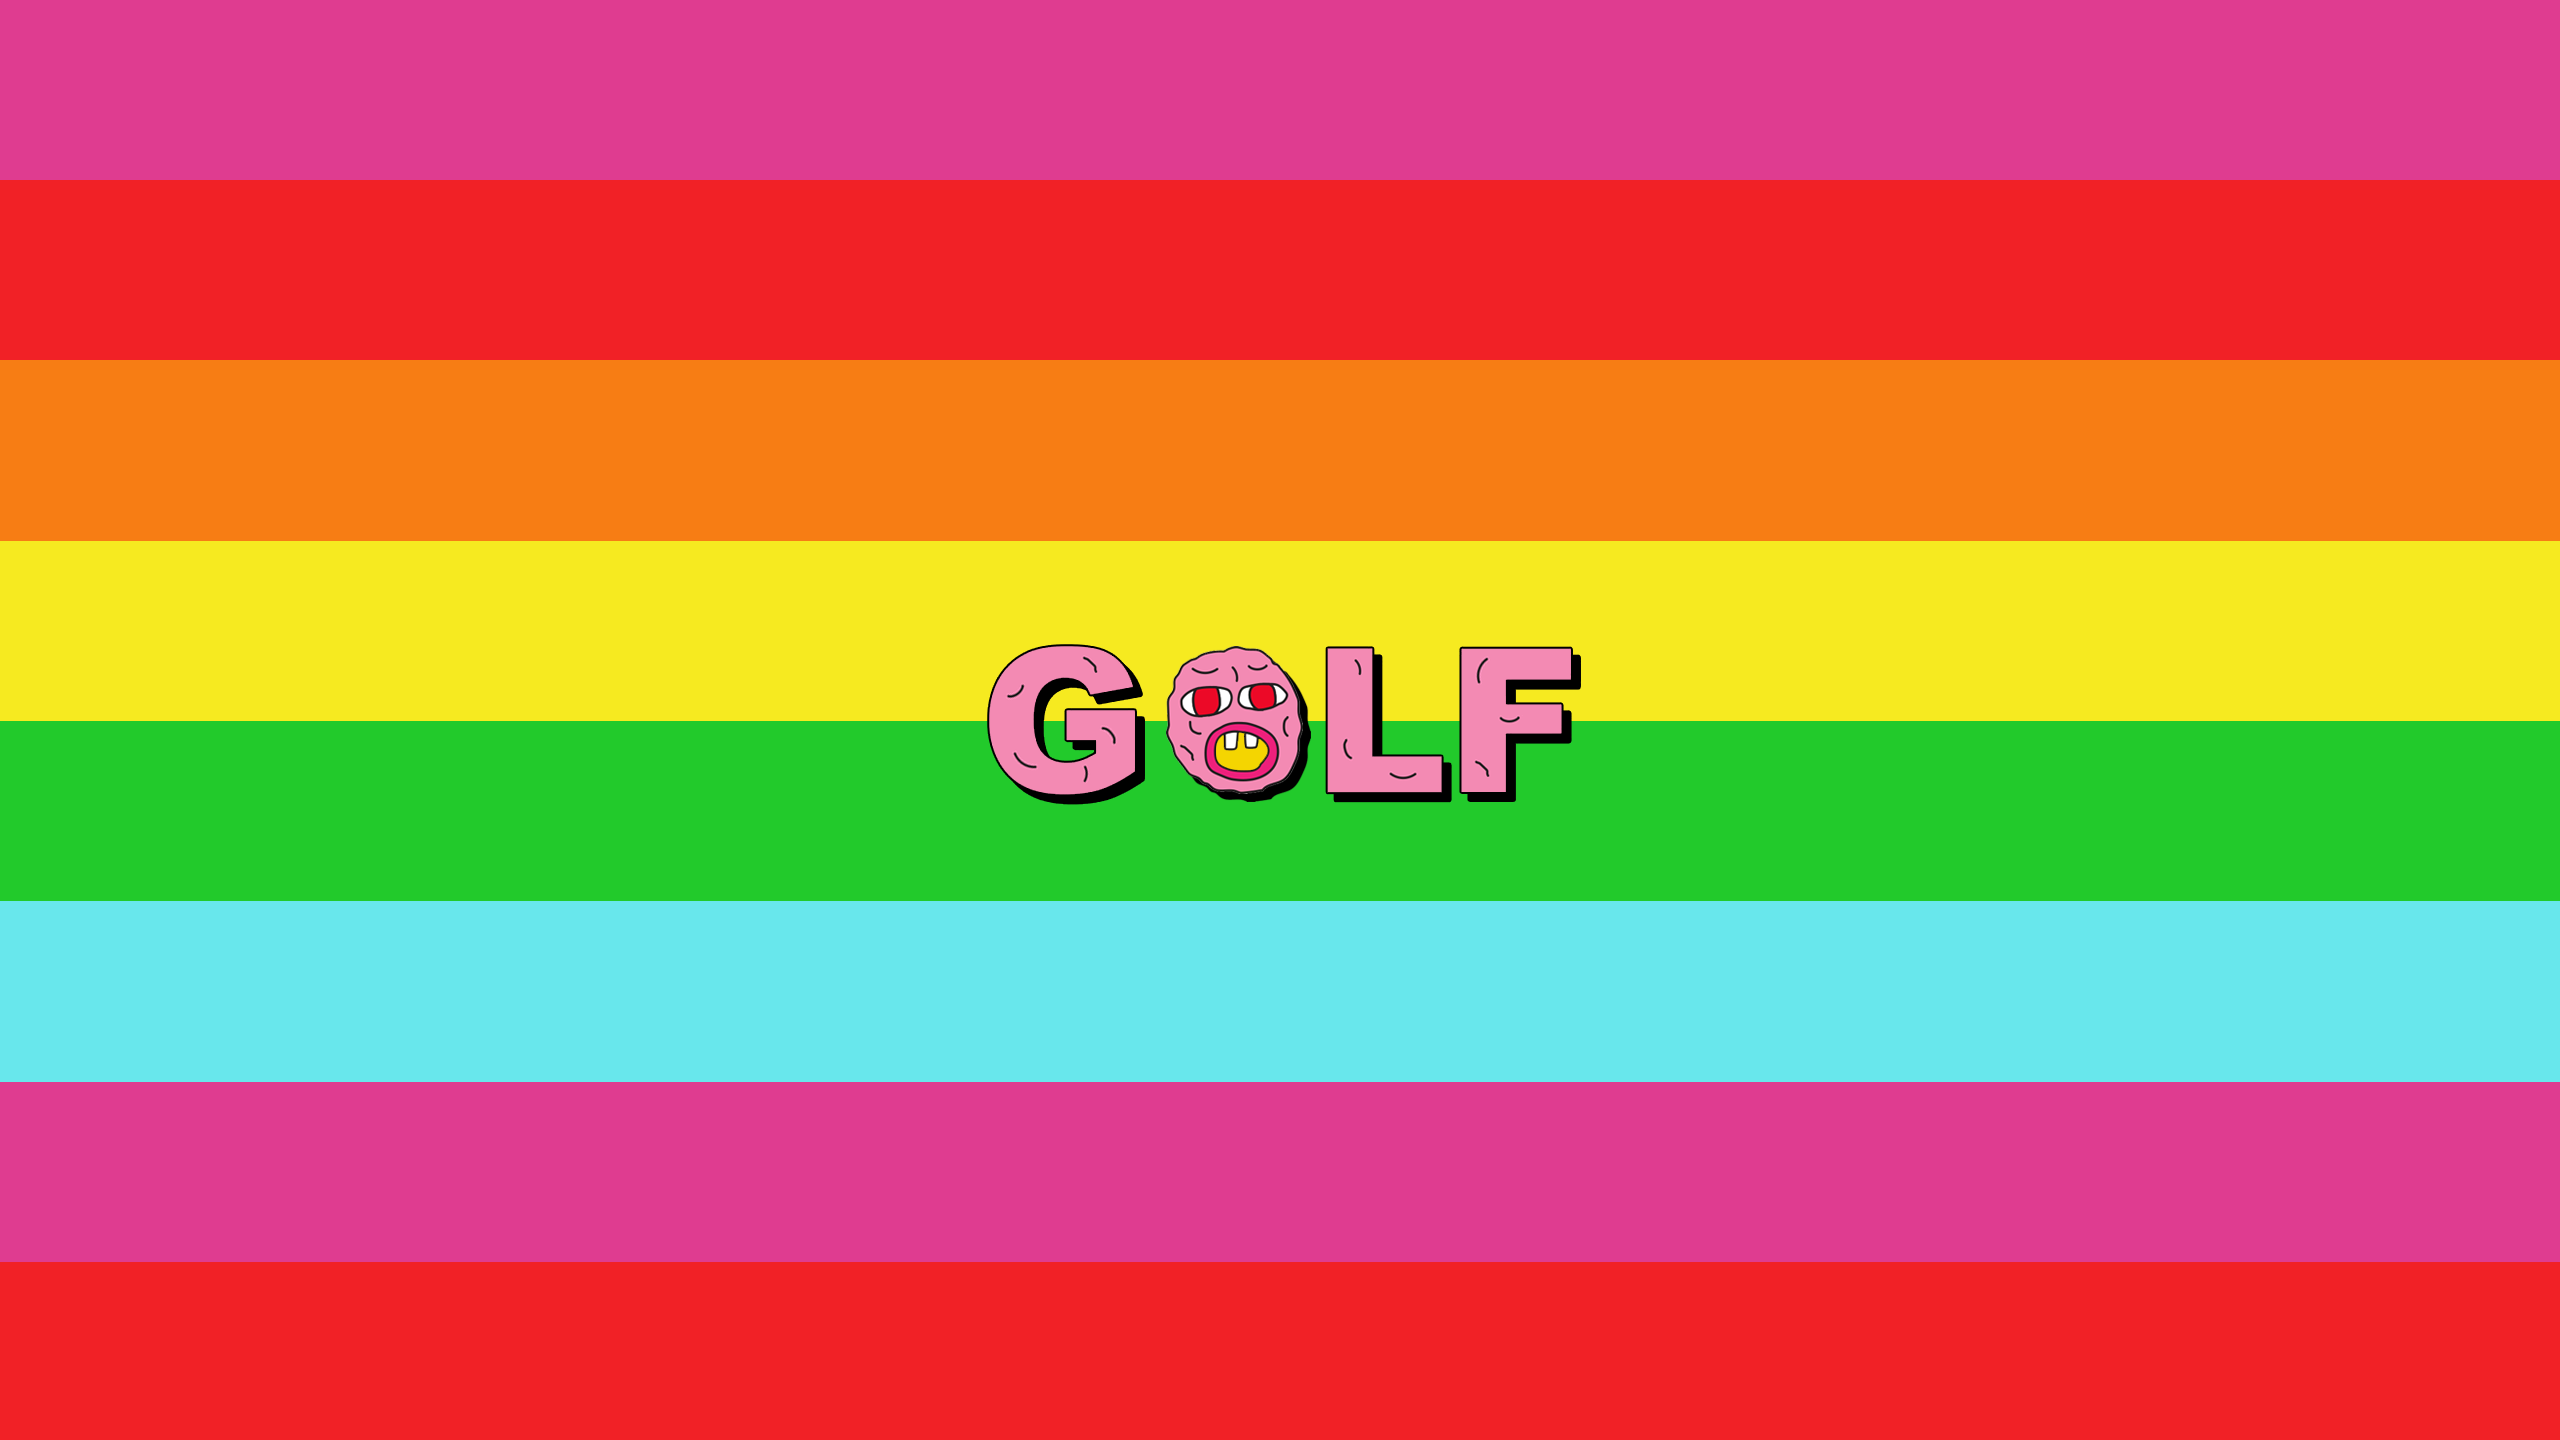 골프 왕 벽지,본문,분홍,초록,노랑,폰트